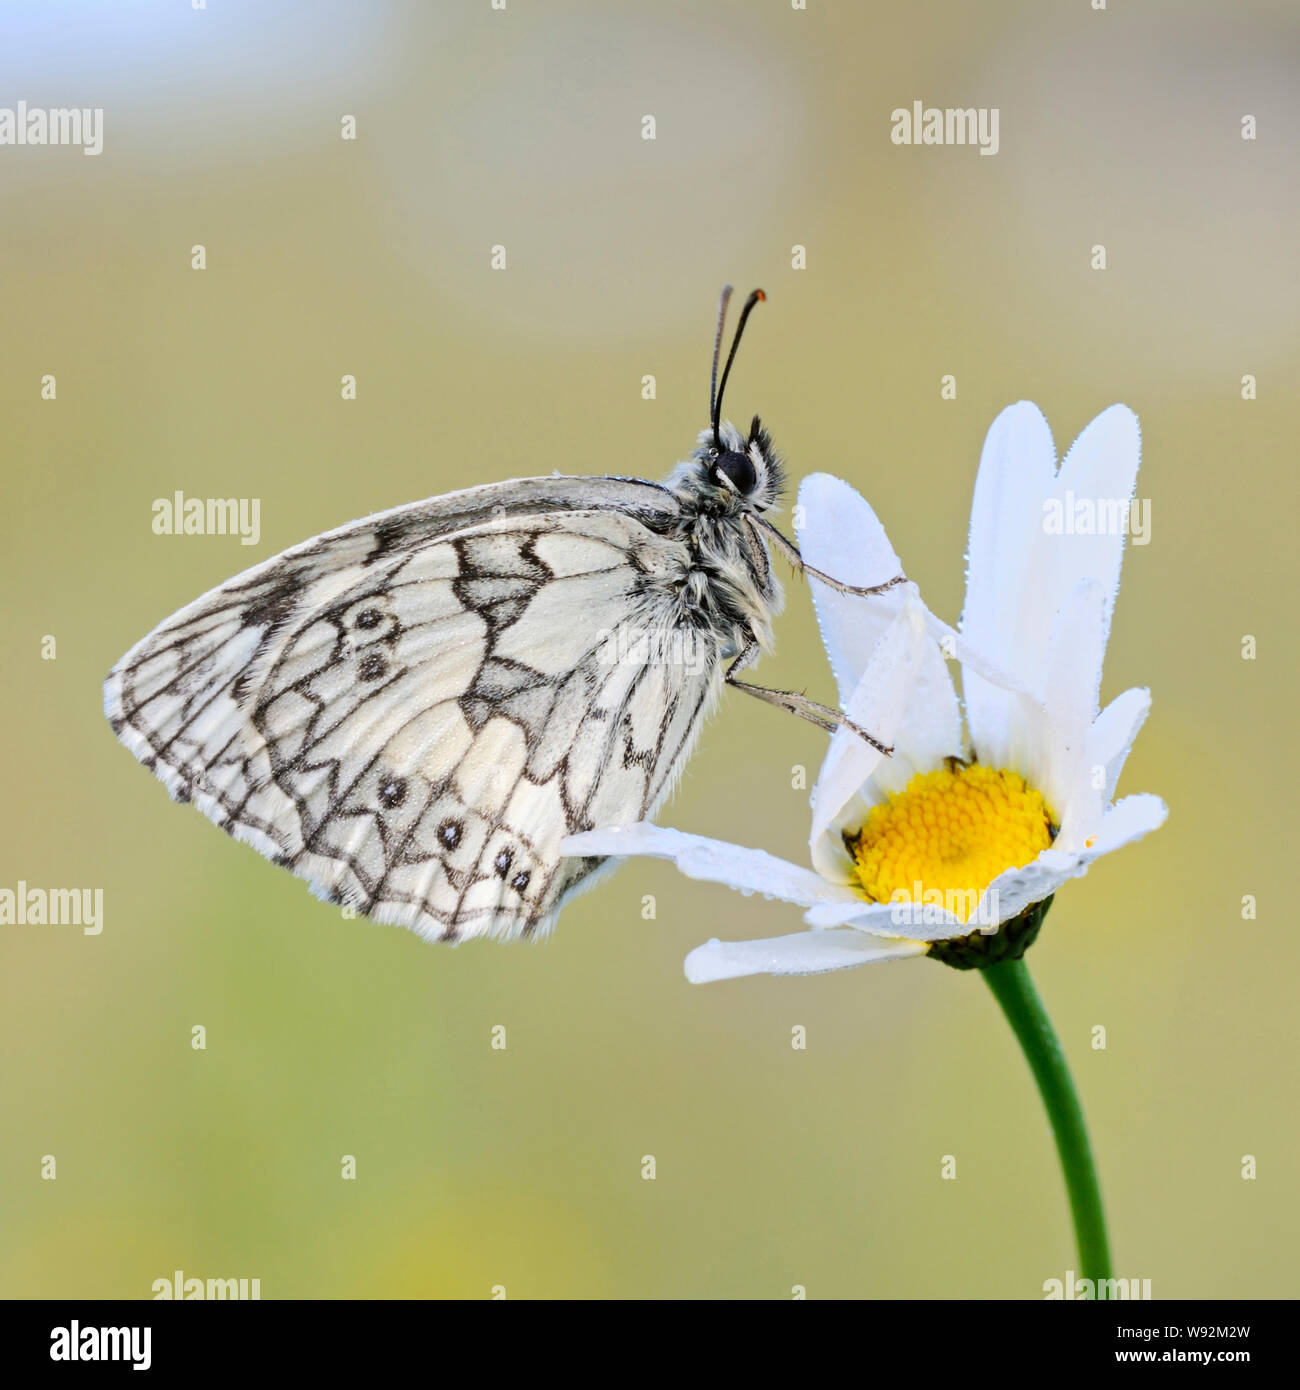 Marbré de Blanc / Schachbrettfalter ( Melanargia galathea ), homme, reposant sur une fleur en fleur (oxeye daisy), de la faune, de l'Europe. Banque D'Images